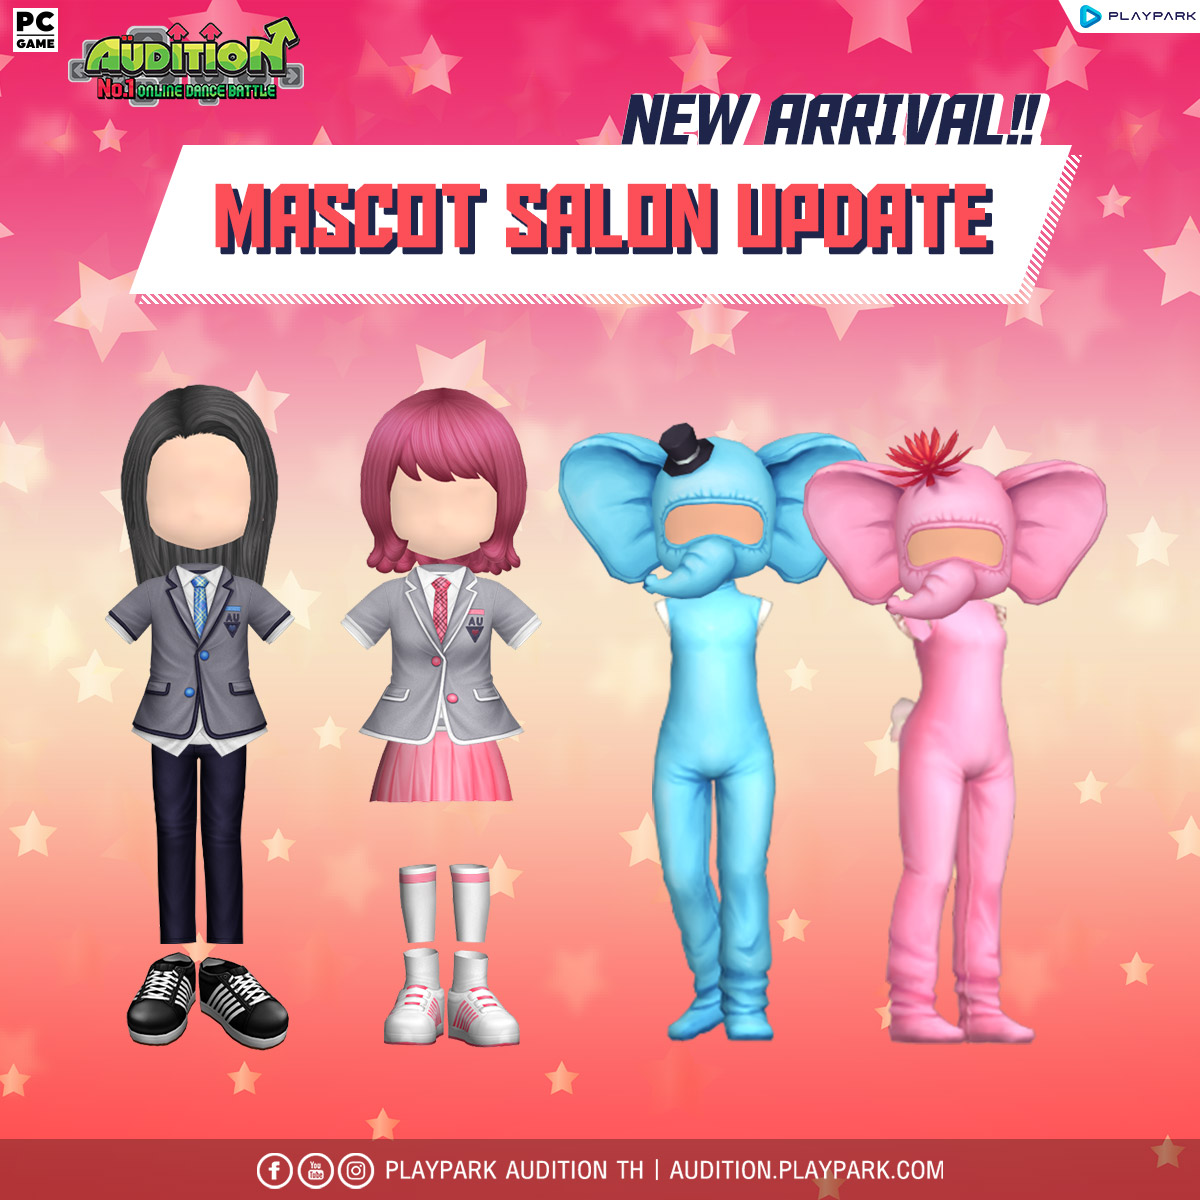 5 กรกฎาคมนี้ Update เพลงใหม่, Mascot Salon และไอเทมใหม่!!  